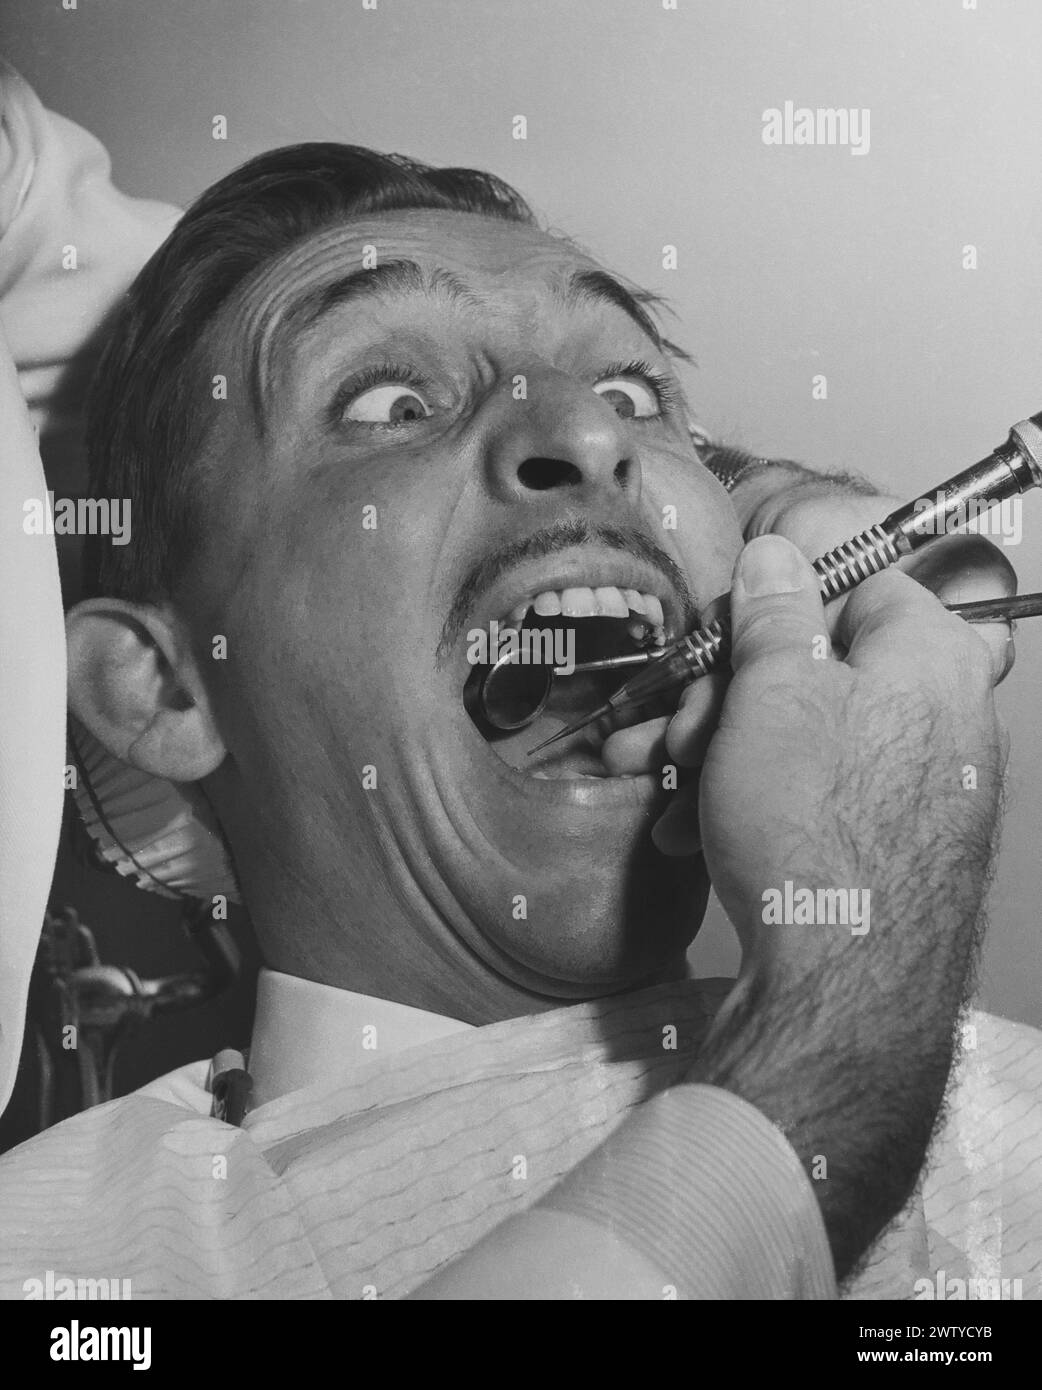 Un uomo di mezza età sembra ansioso mentre siede sulla sedia dentale e sta sottoponendo a una procedura dentale di routine Foto Stock